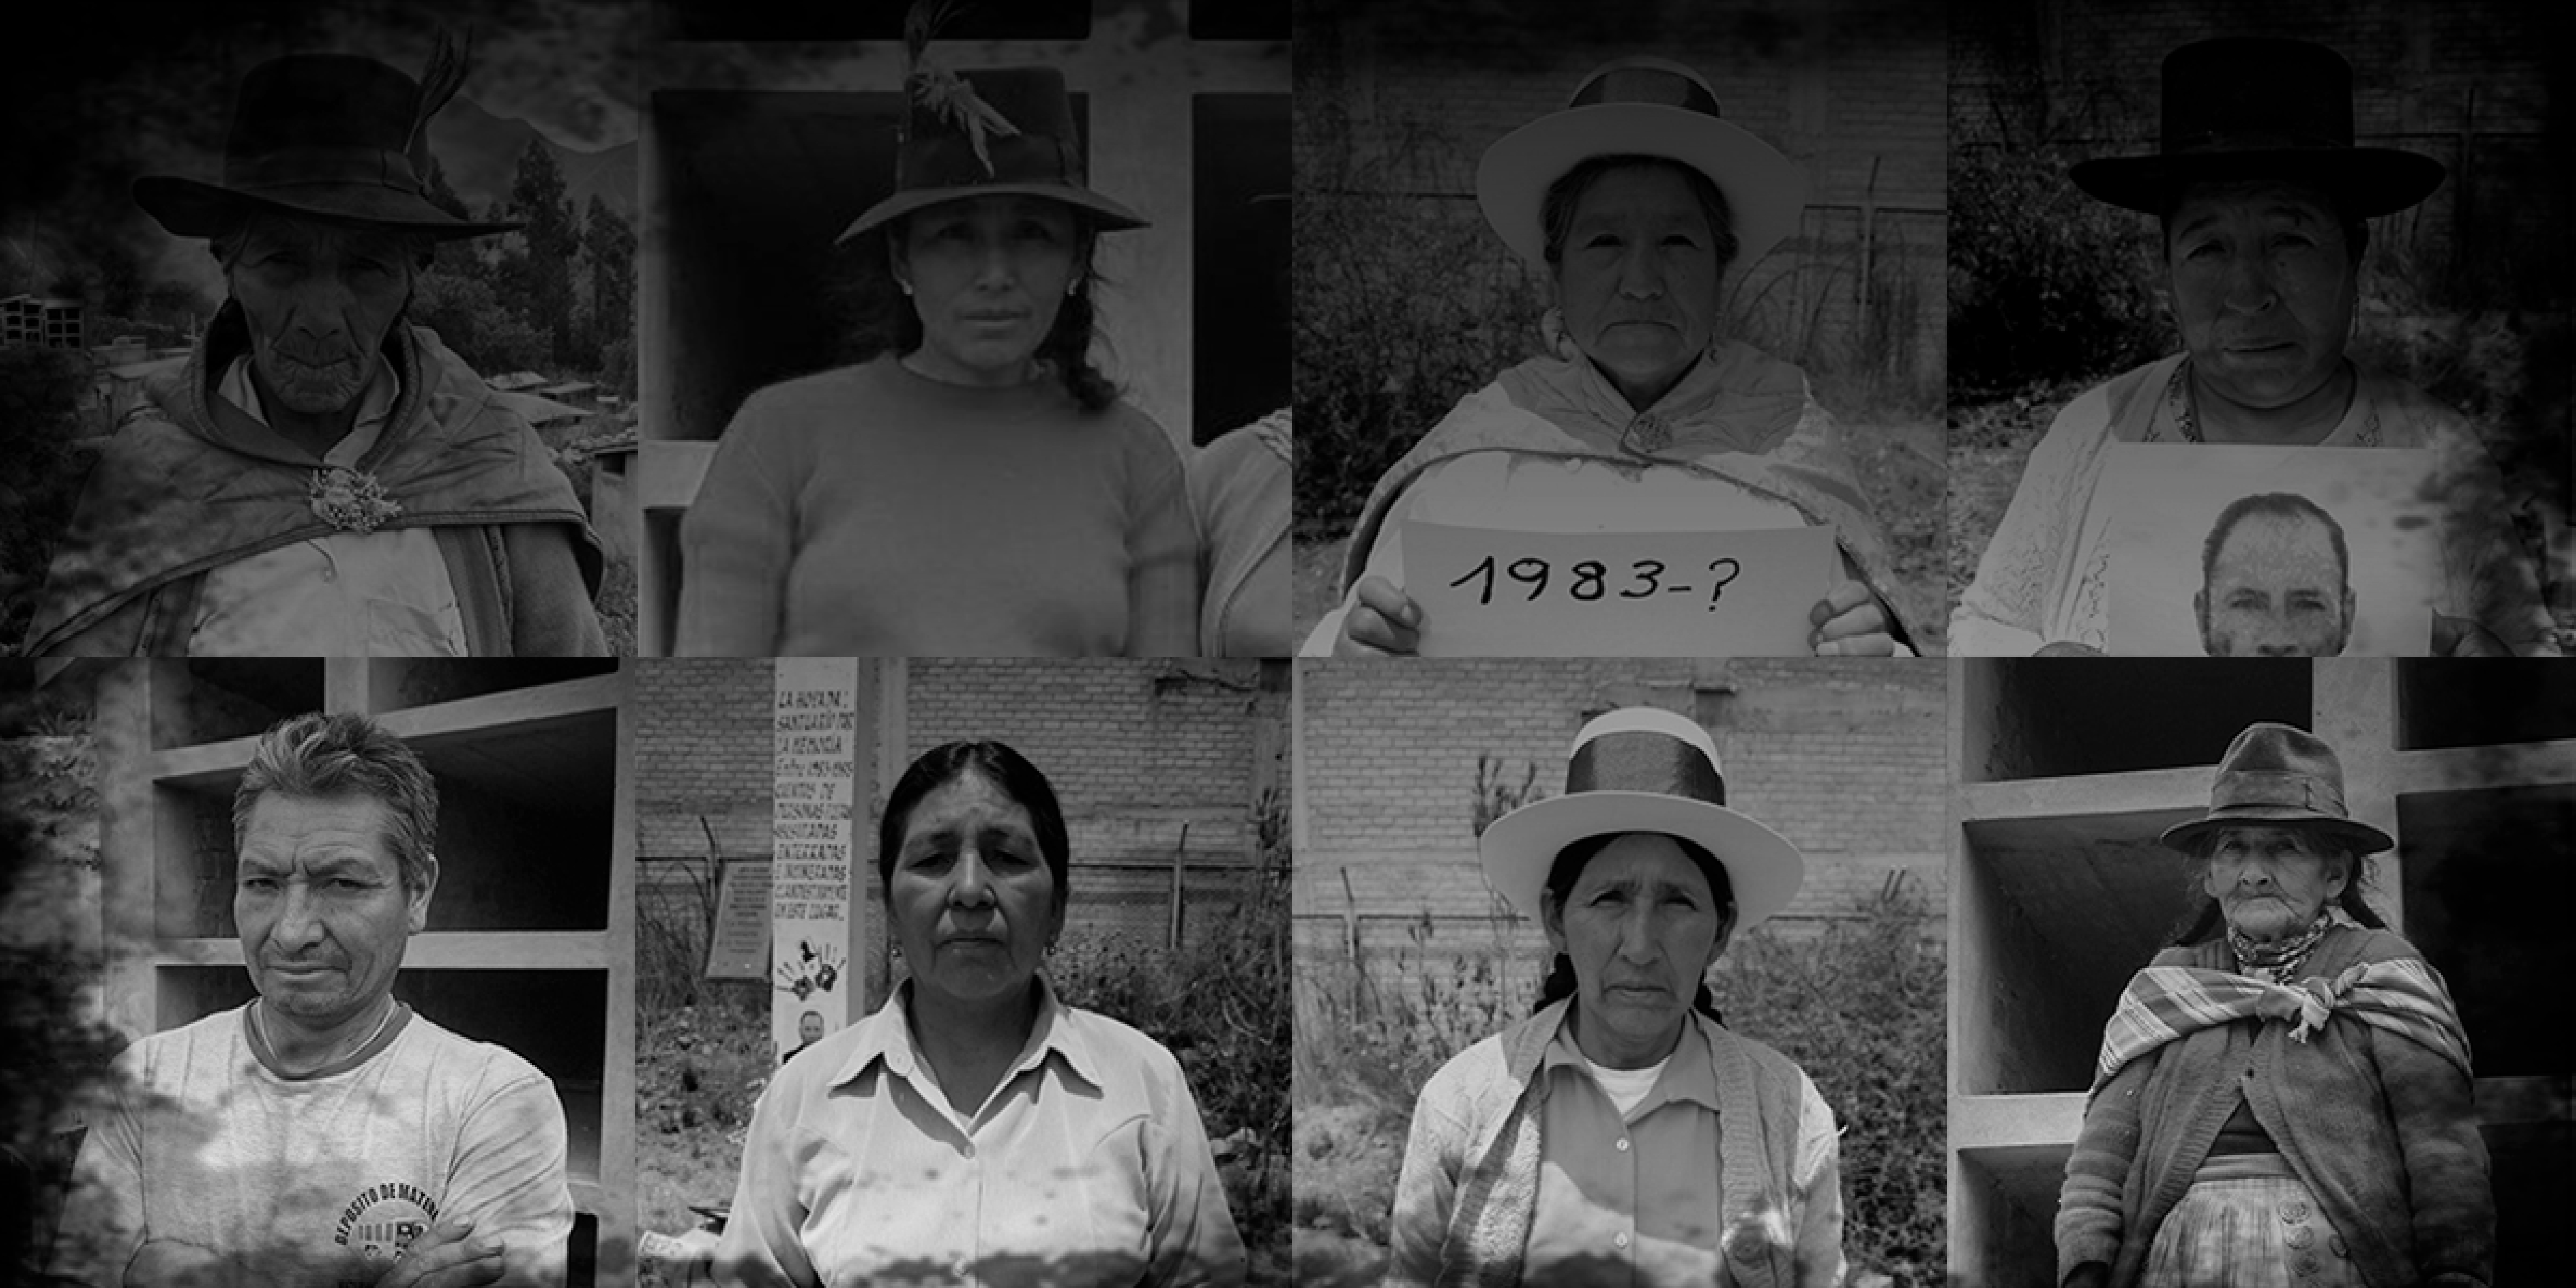 Fotografías y testimonios de familiares de desaparecidos del caserío Río Blanco y La Hoyada, en Ayacucho, la región más golpeada por los años de violencia en Perú